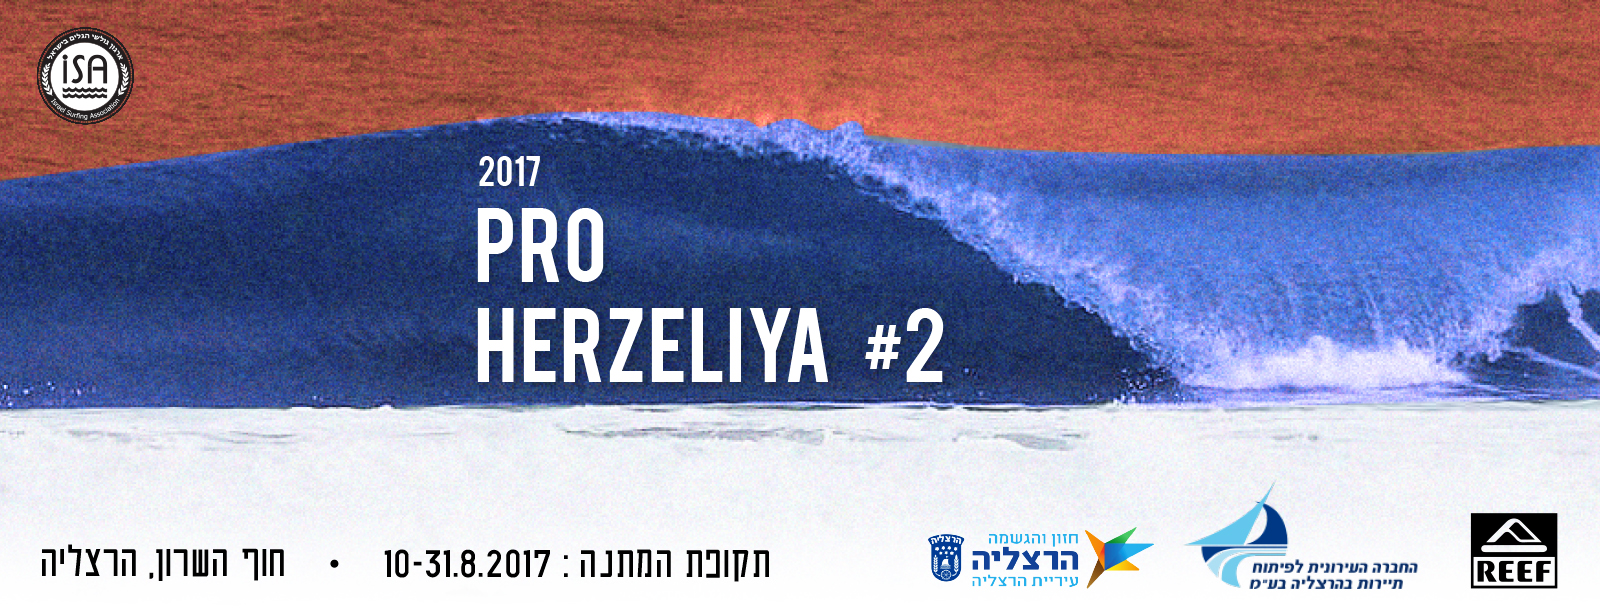 Pro Herzeliya 2017 #2